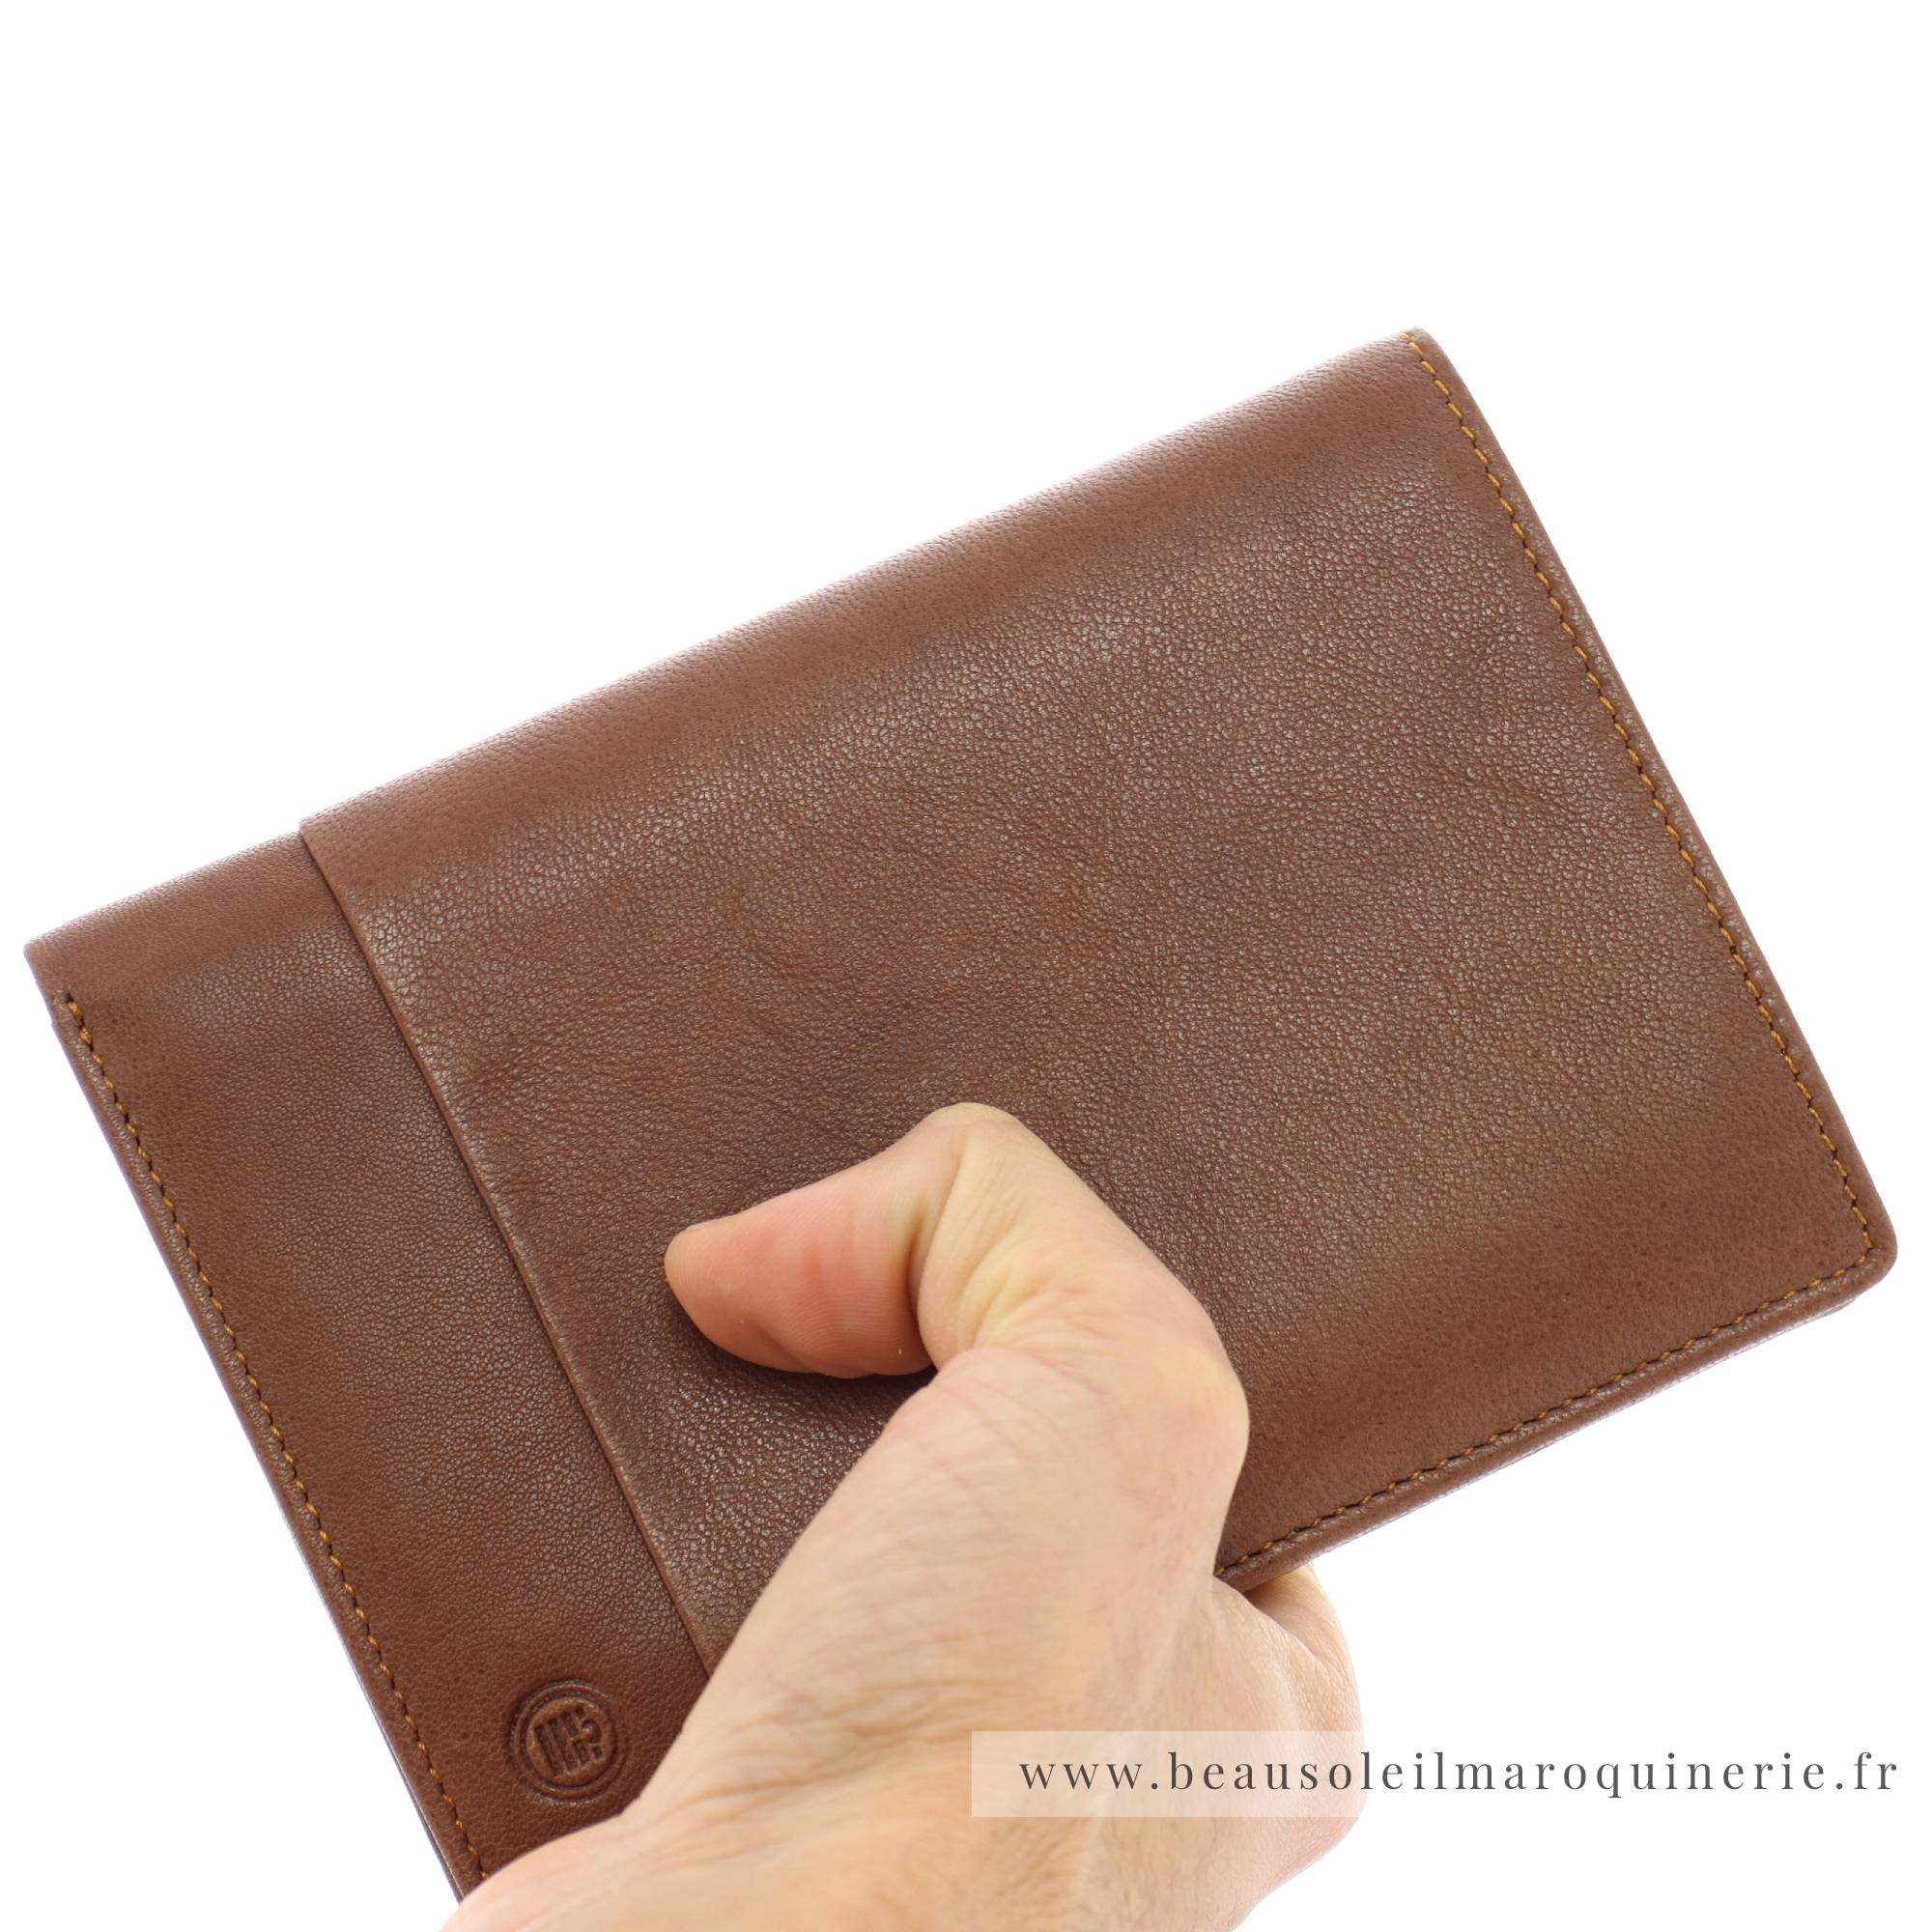 Portefeuille porte-cartes Serge Blanco en cuir ligne Anchorage, référence ANC21013 149 cognac porté main